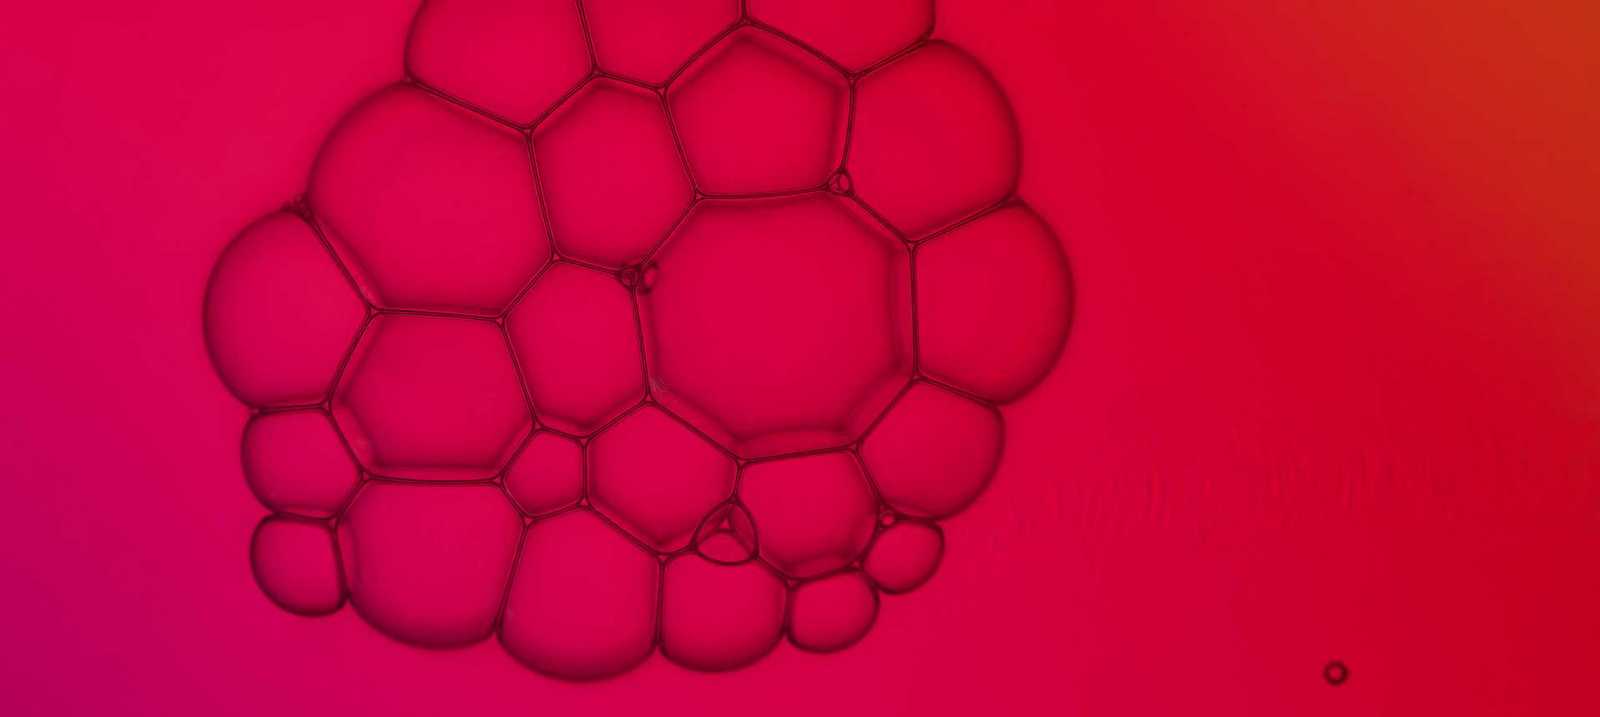 Seifenblasen Makroaufnahme vor rotem Hintergrund